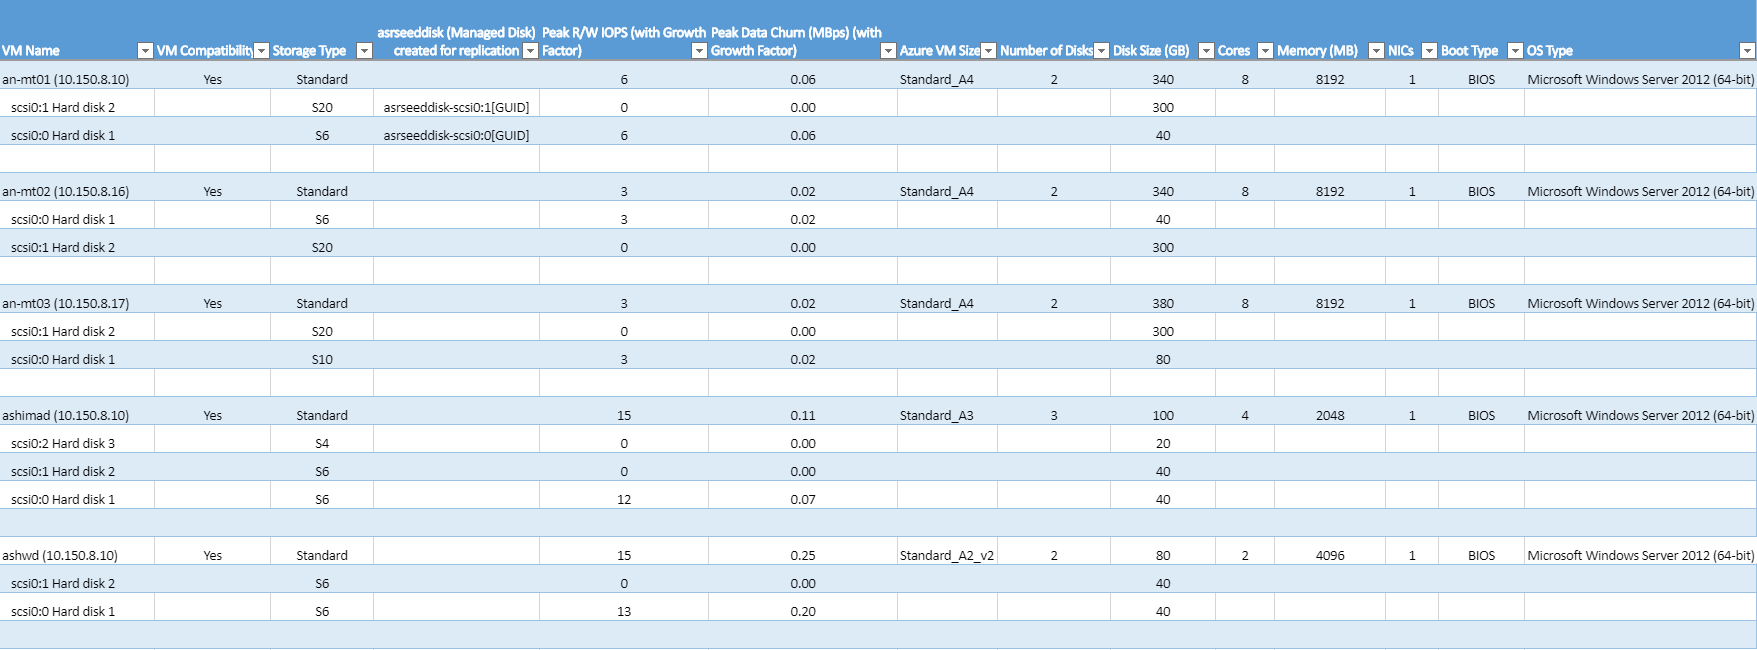 Excel-Tabelle mit kompatiblen VMs